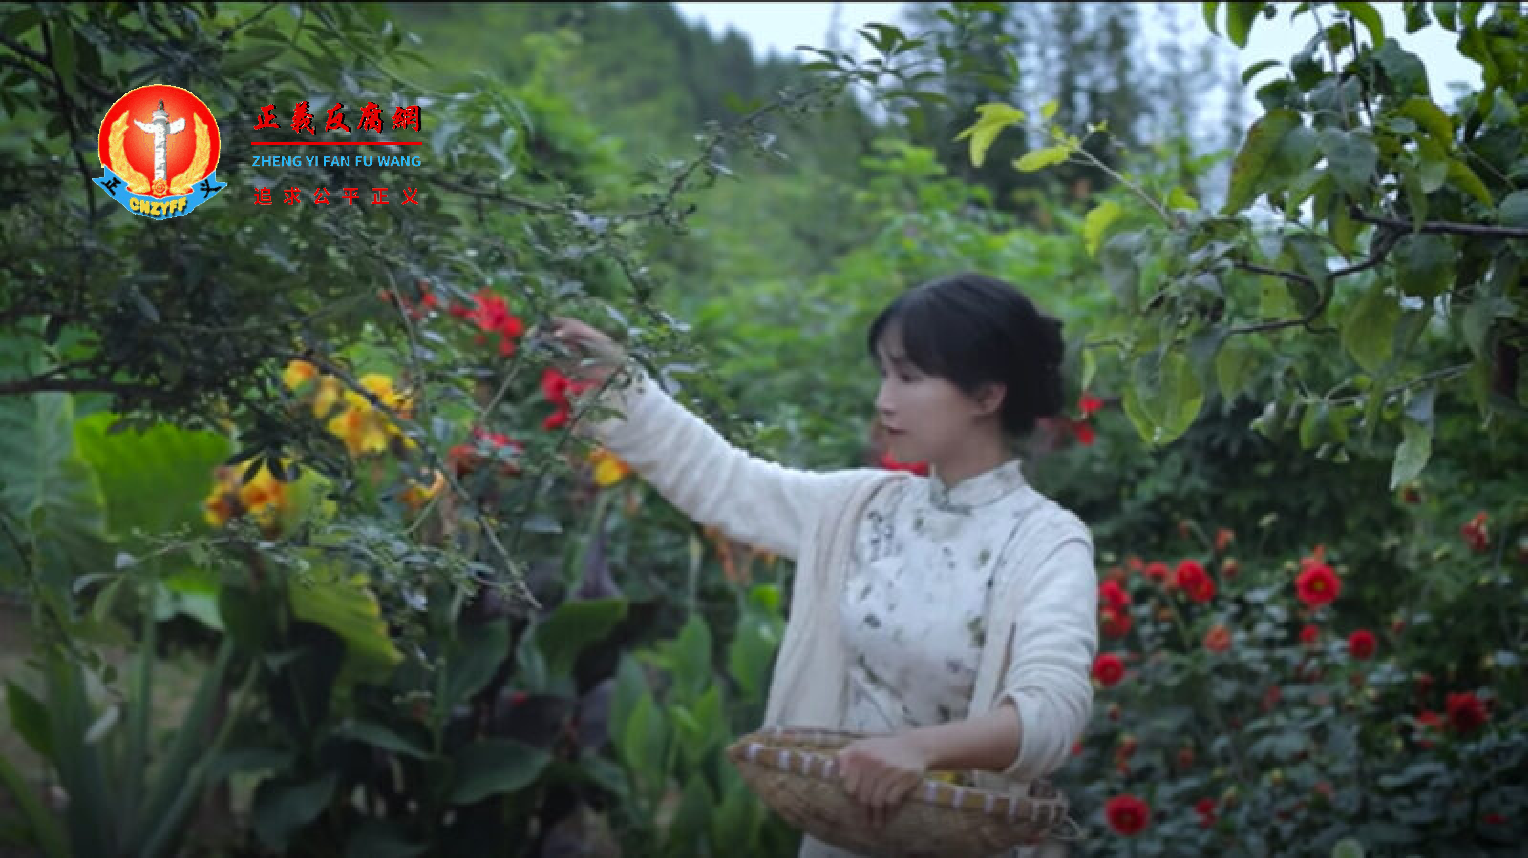 中国知名网红李子柒在2021年7月14日发布的《柴米油盐酱醋茶》短视频中采摘野果的画面。.png